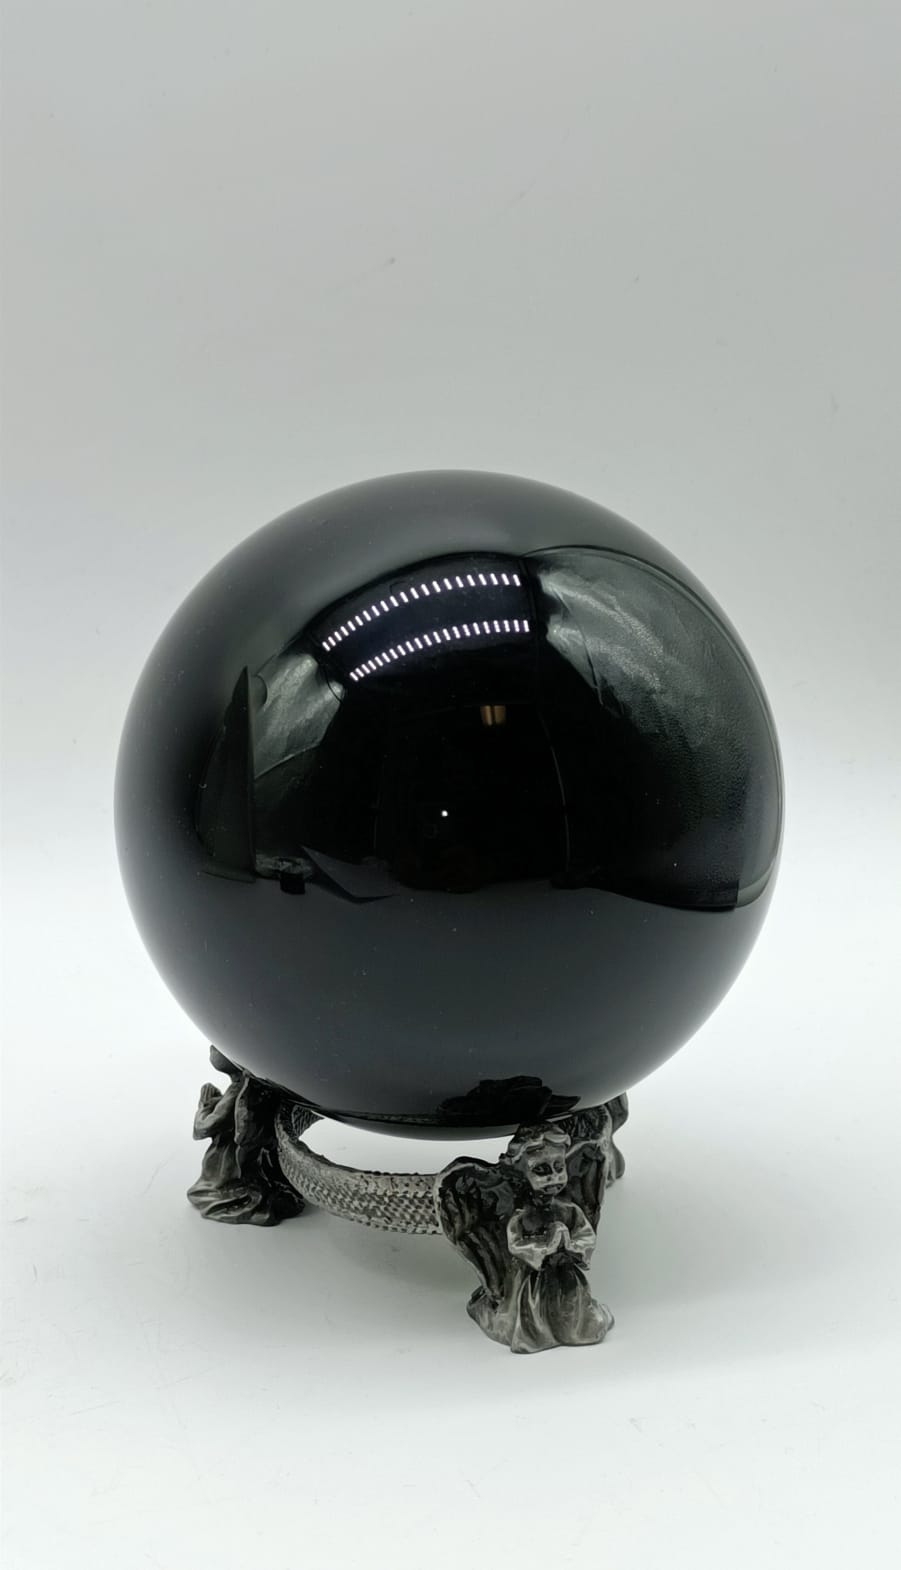 Black Obsidian Sphere 1.245 Kgs